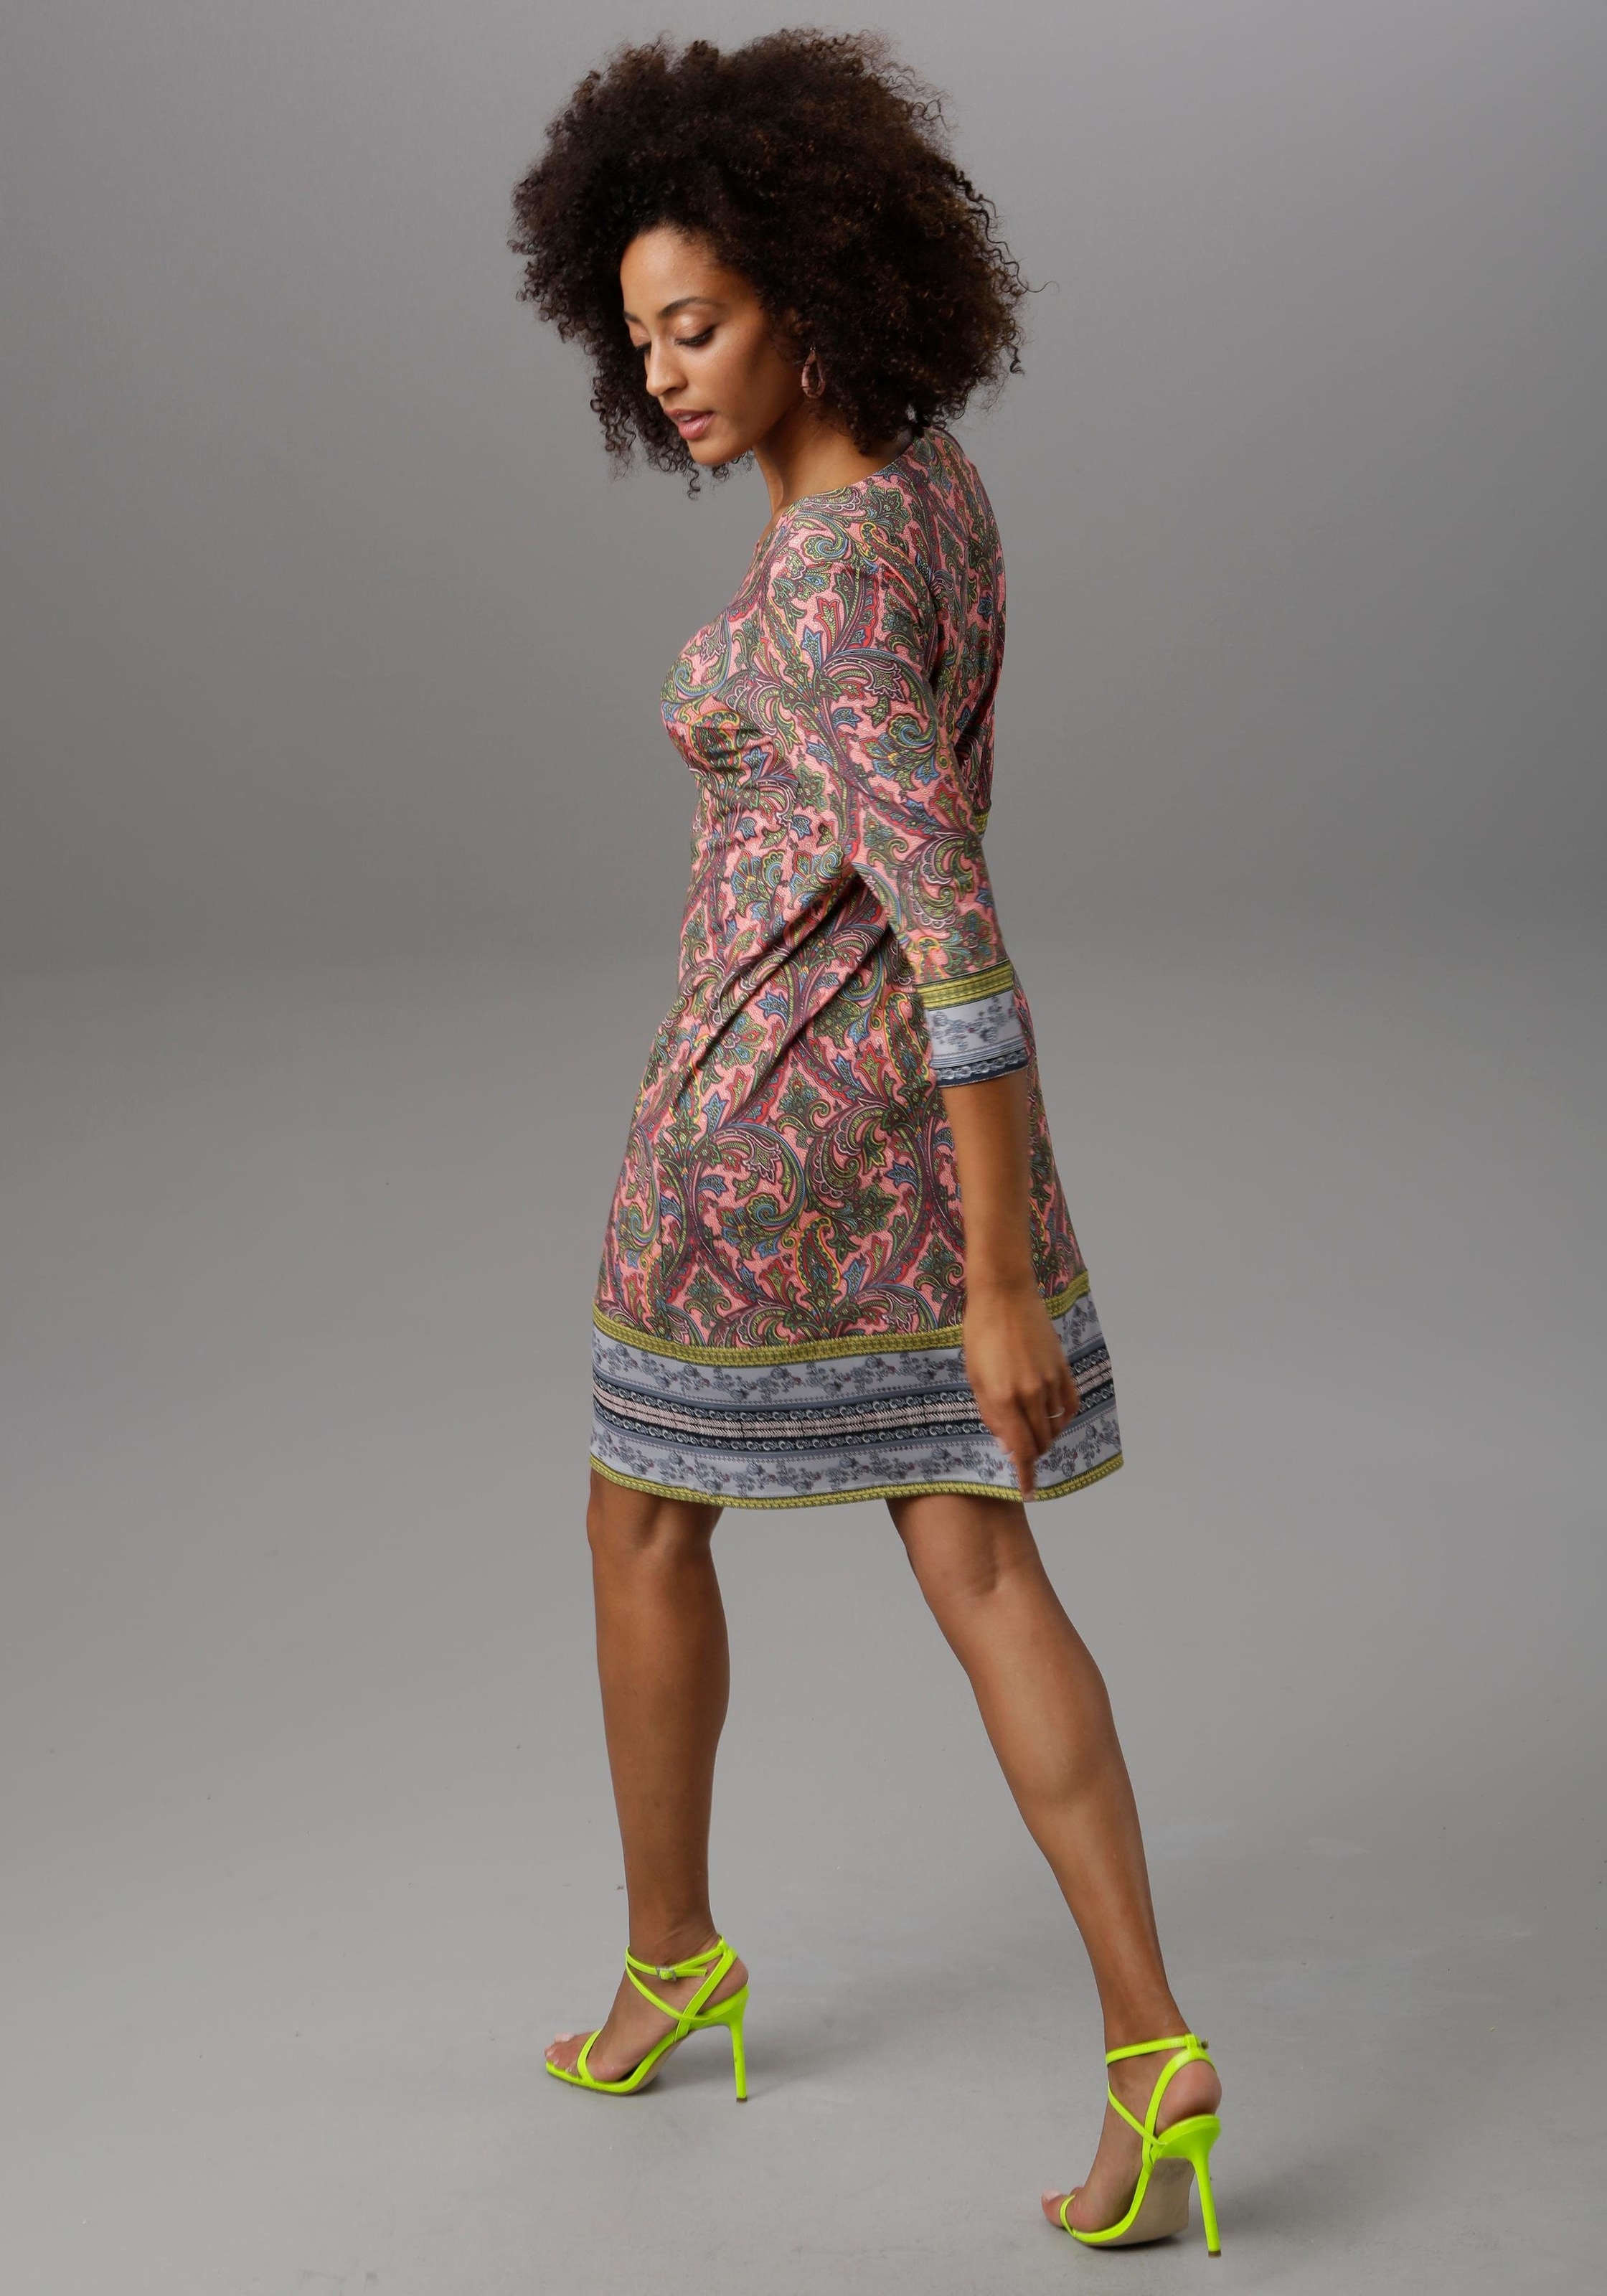 SELECTED Jerseykleid, Muster farbenfrohem mit kaufen online BAUR Aniston |